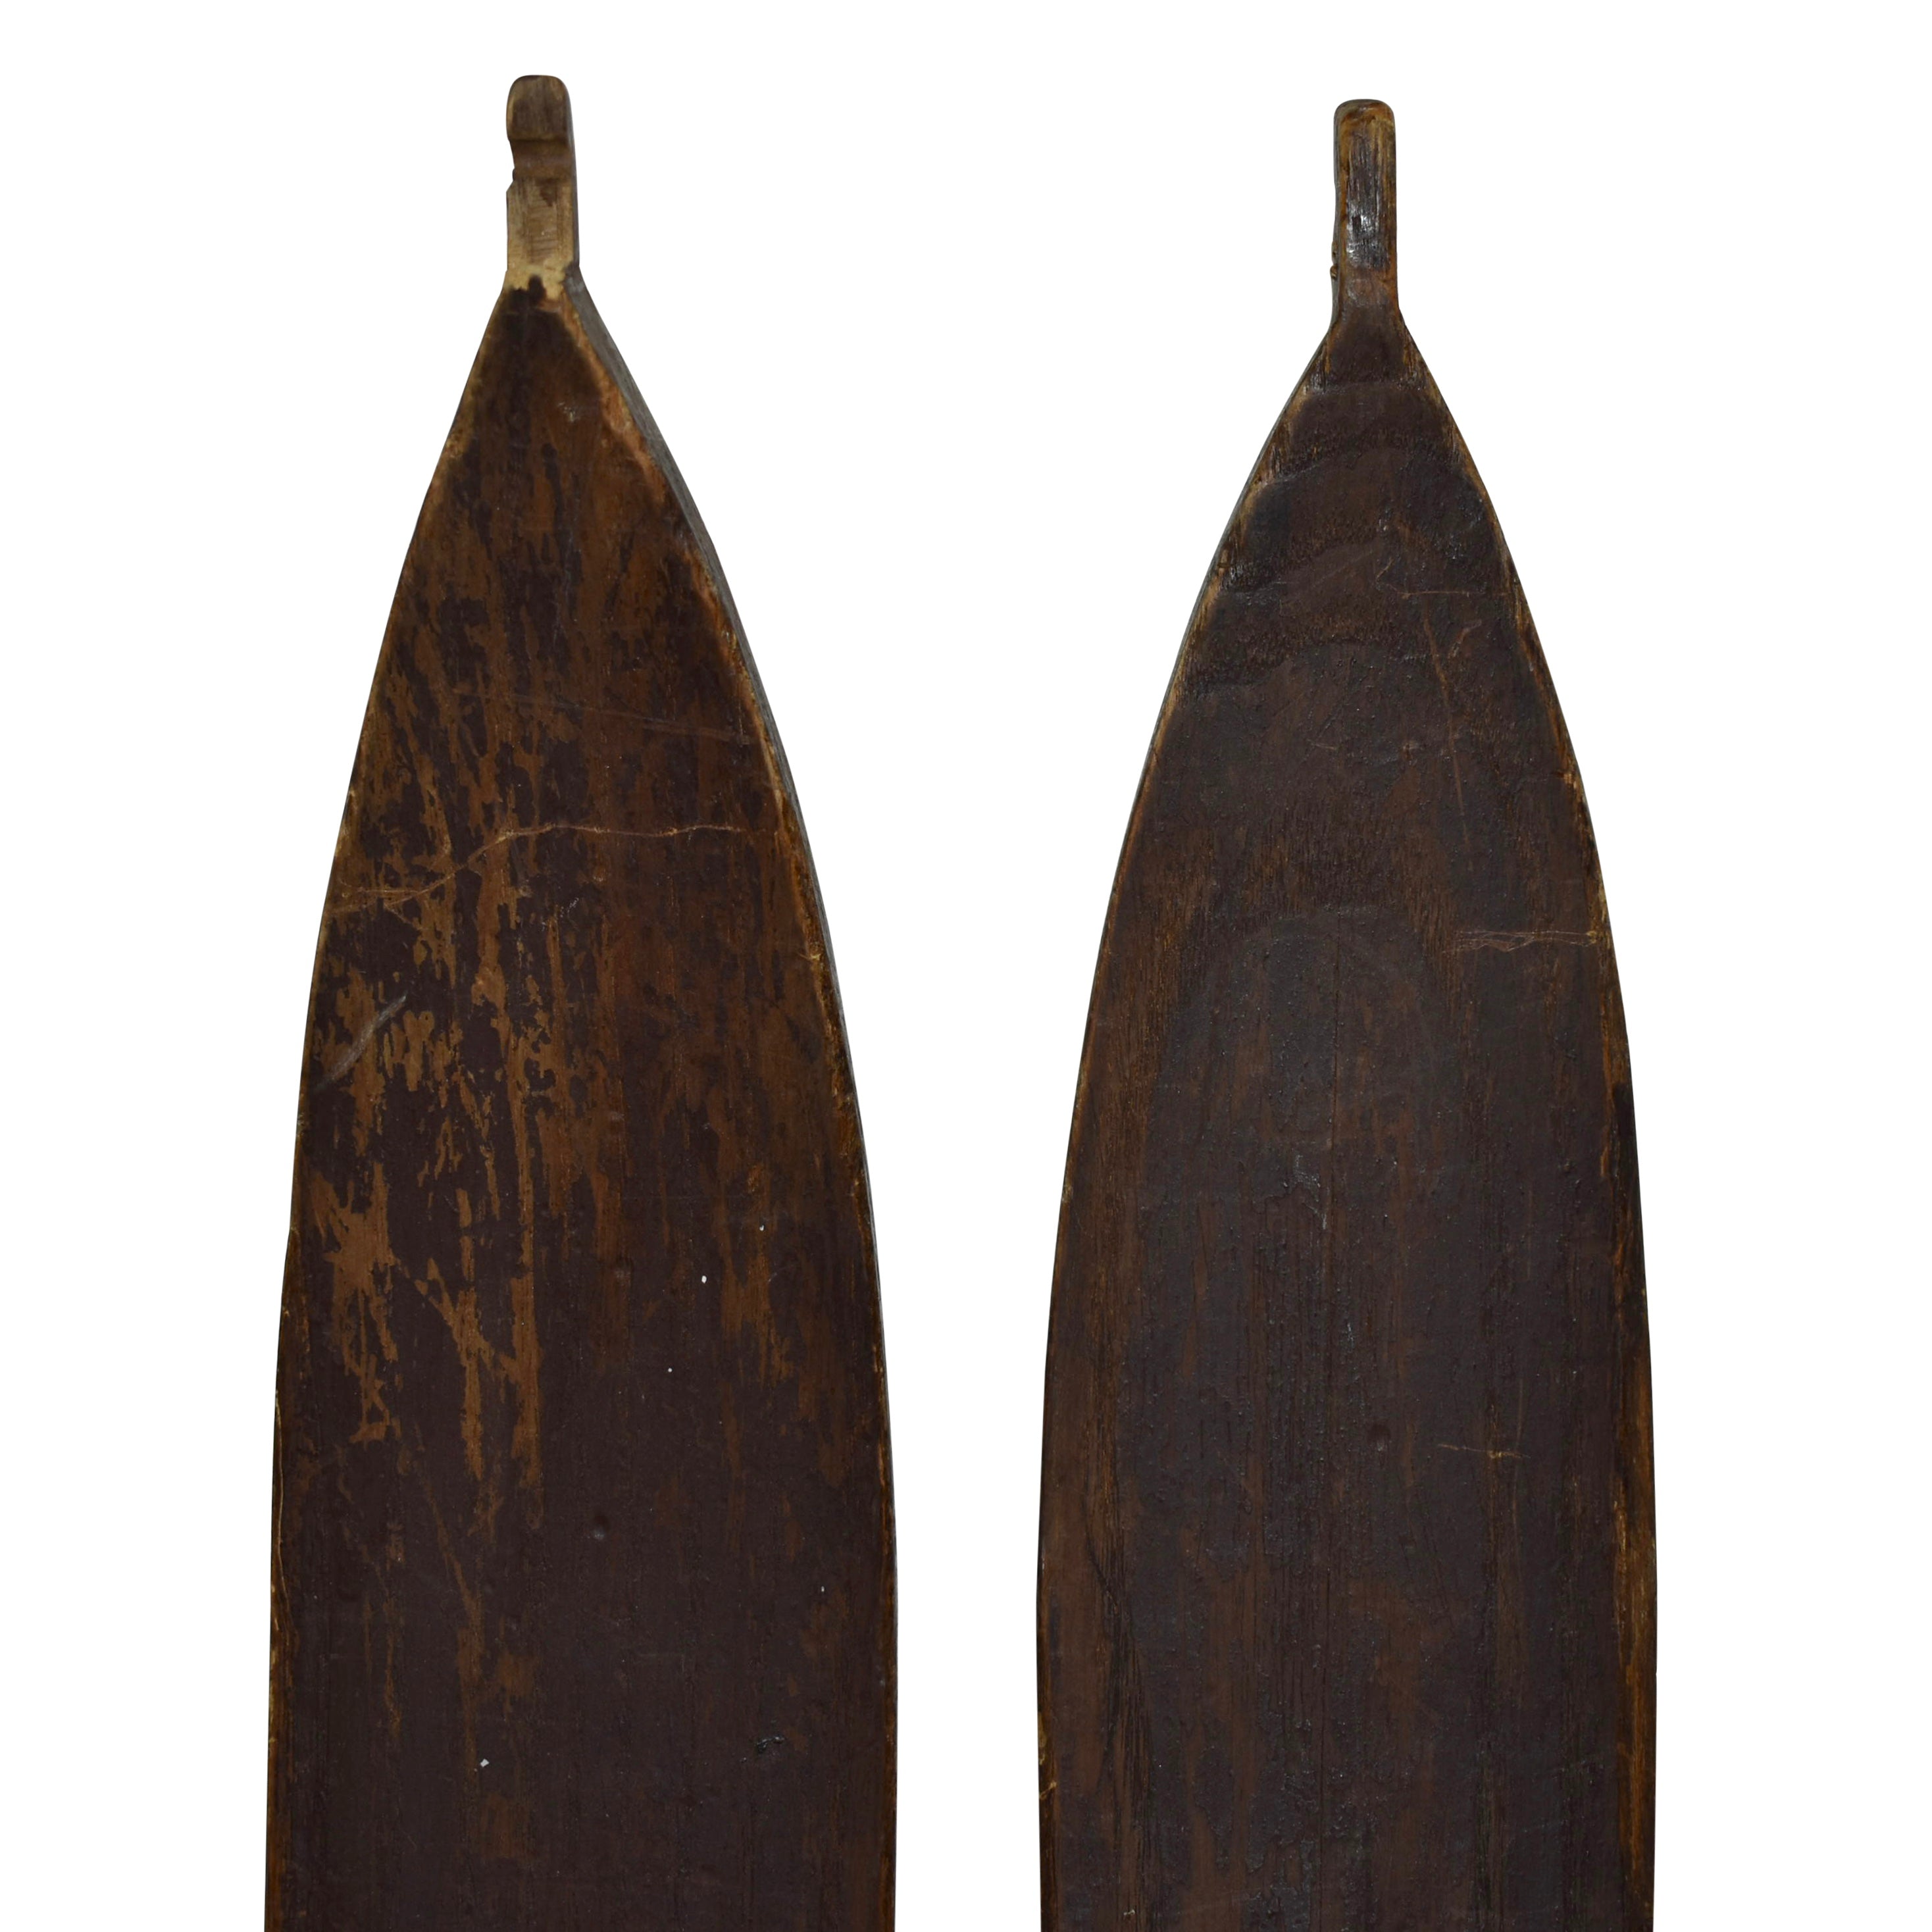 Wooden Skis with Metal Bindings